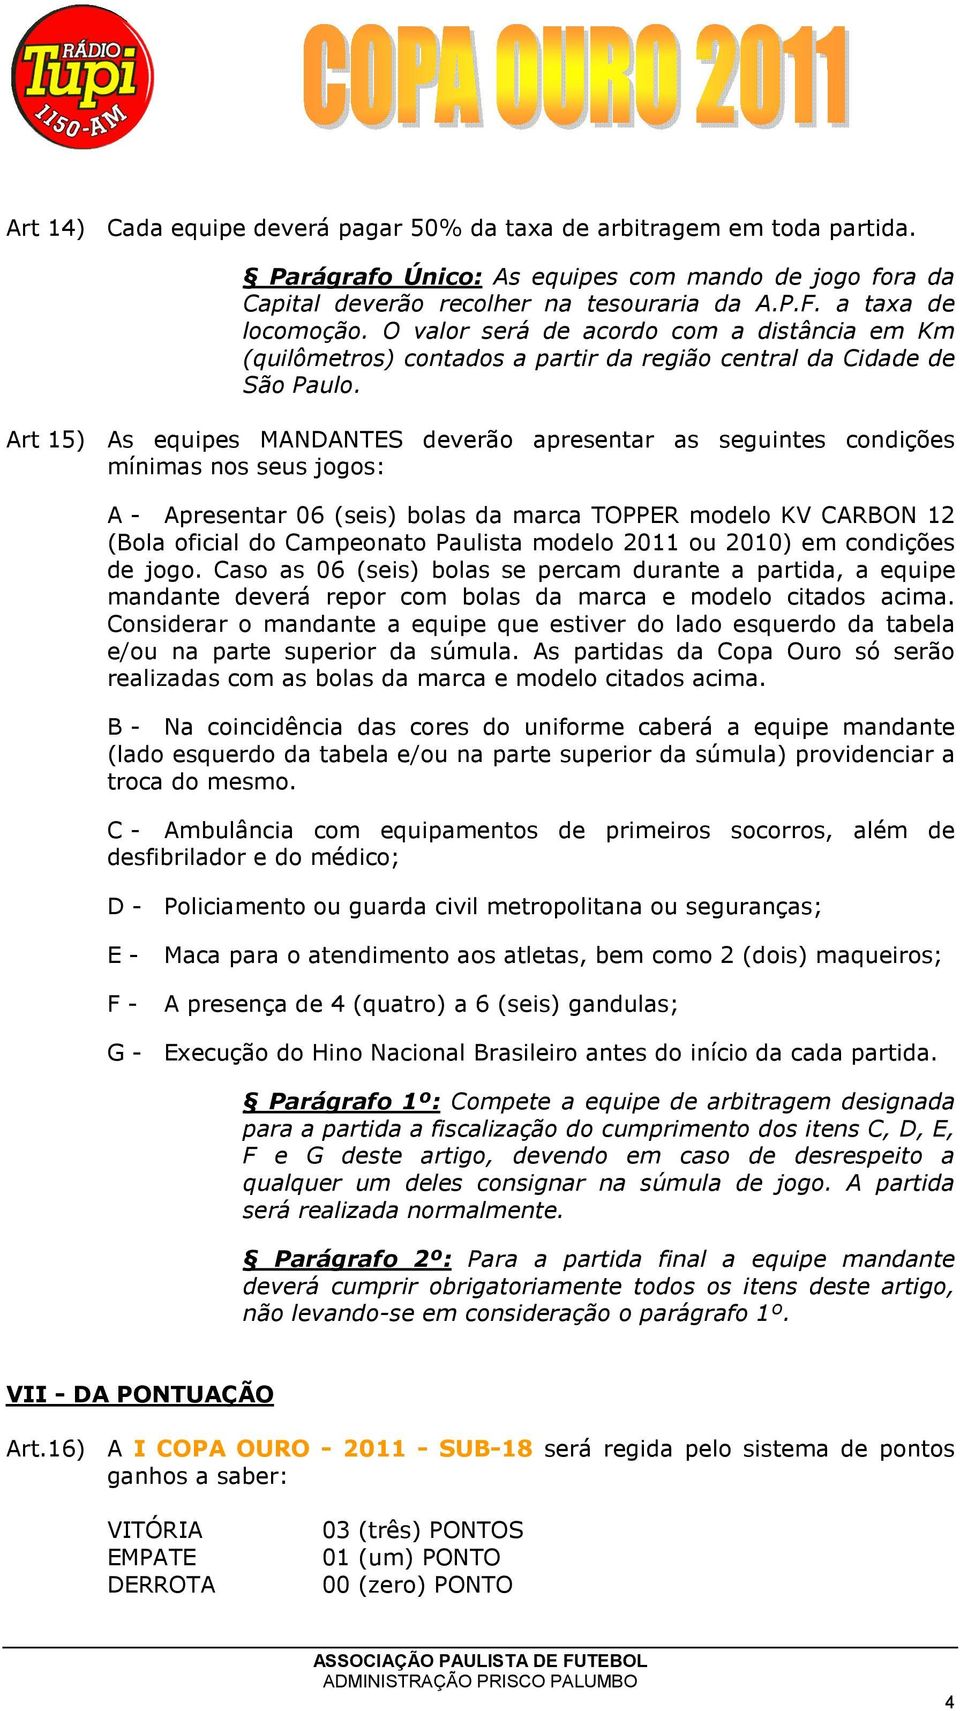 Art 15) As equipes MANDANTES deverão apresentar as seguintes condições mínimas nos seus jogos: A - Apresentar 06 (seis) bolas da marca TOPPER modelo KV CARBON 12 (Bola oficial do Campeonato Paulista